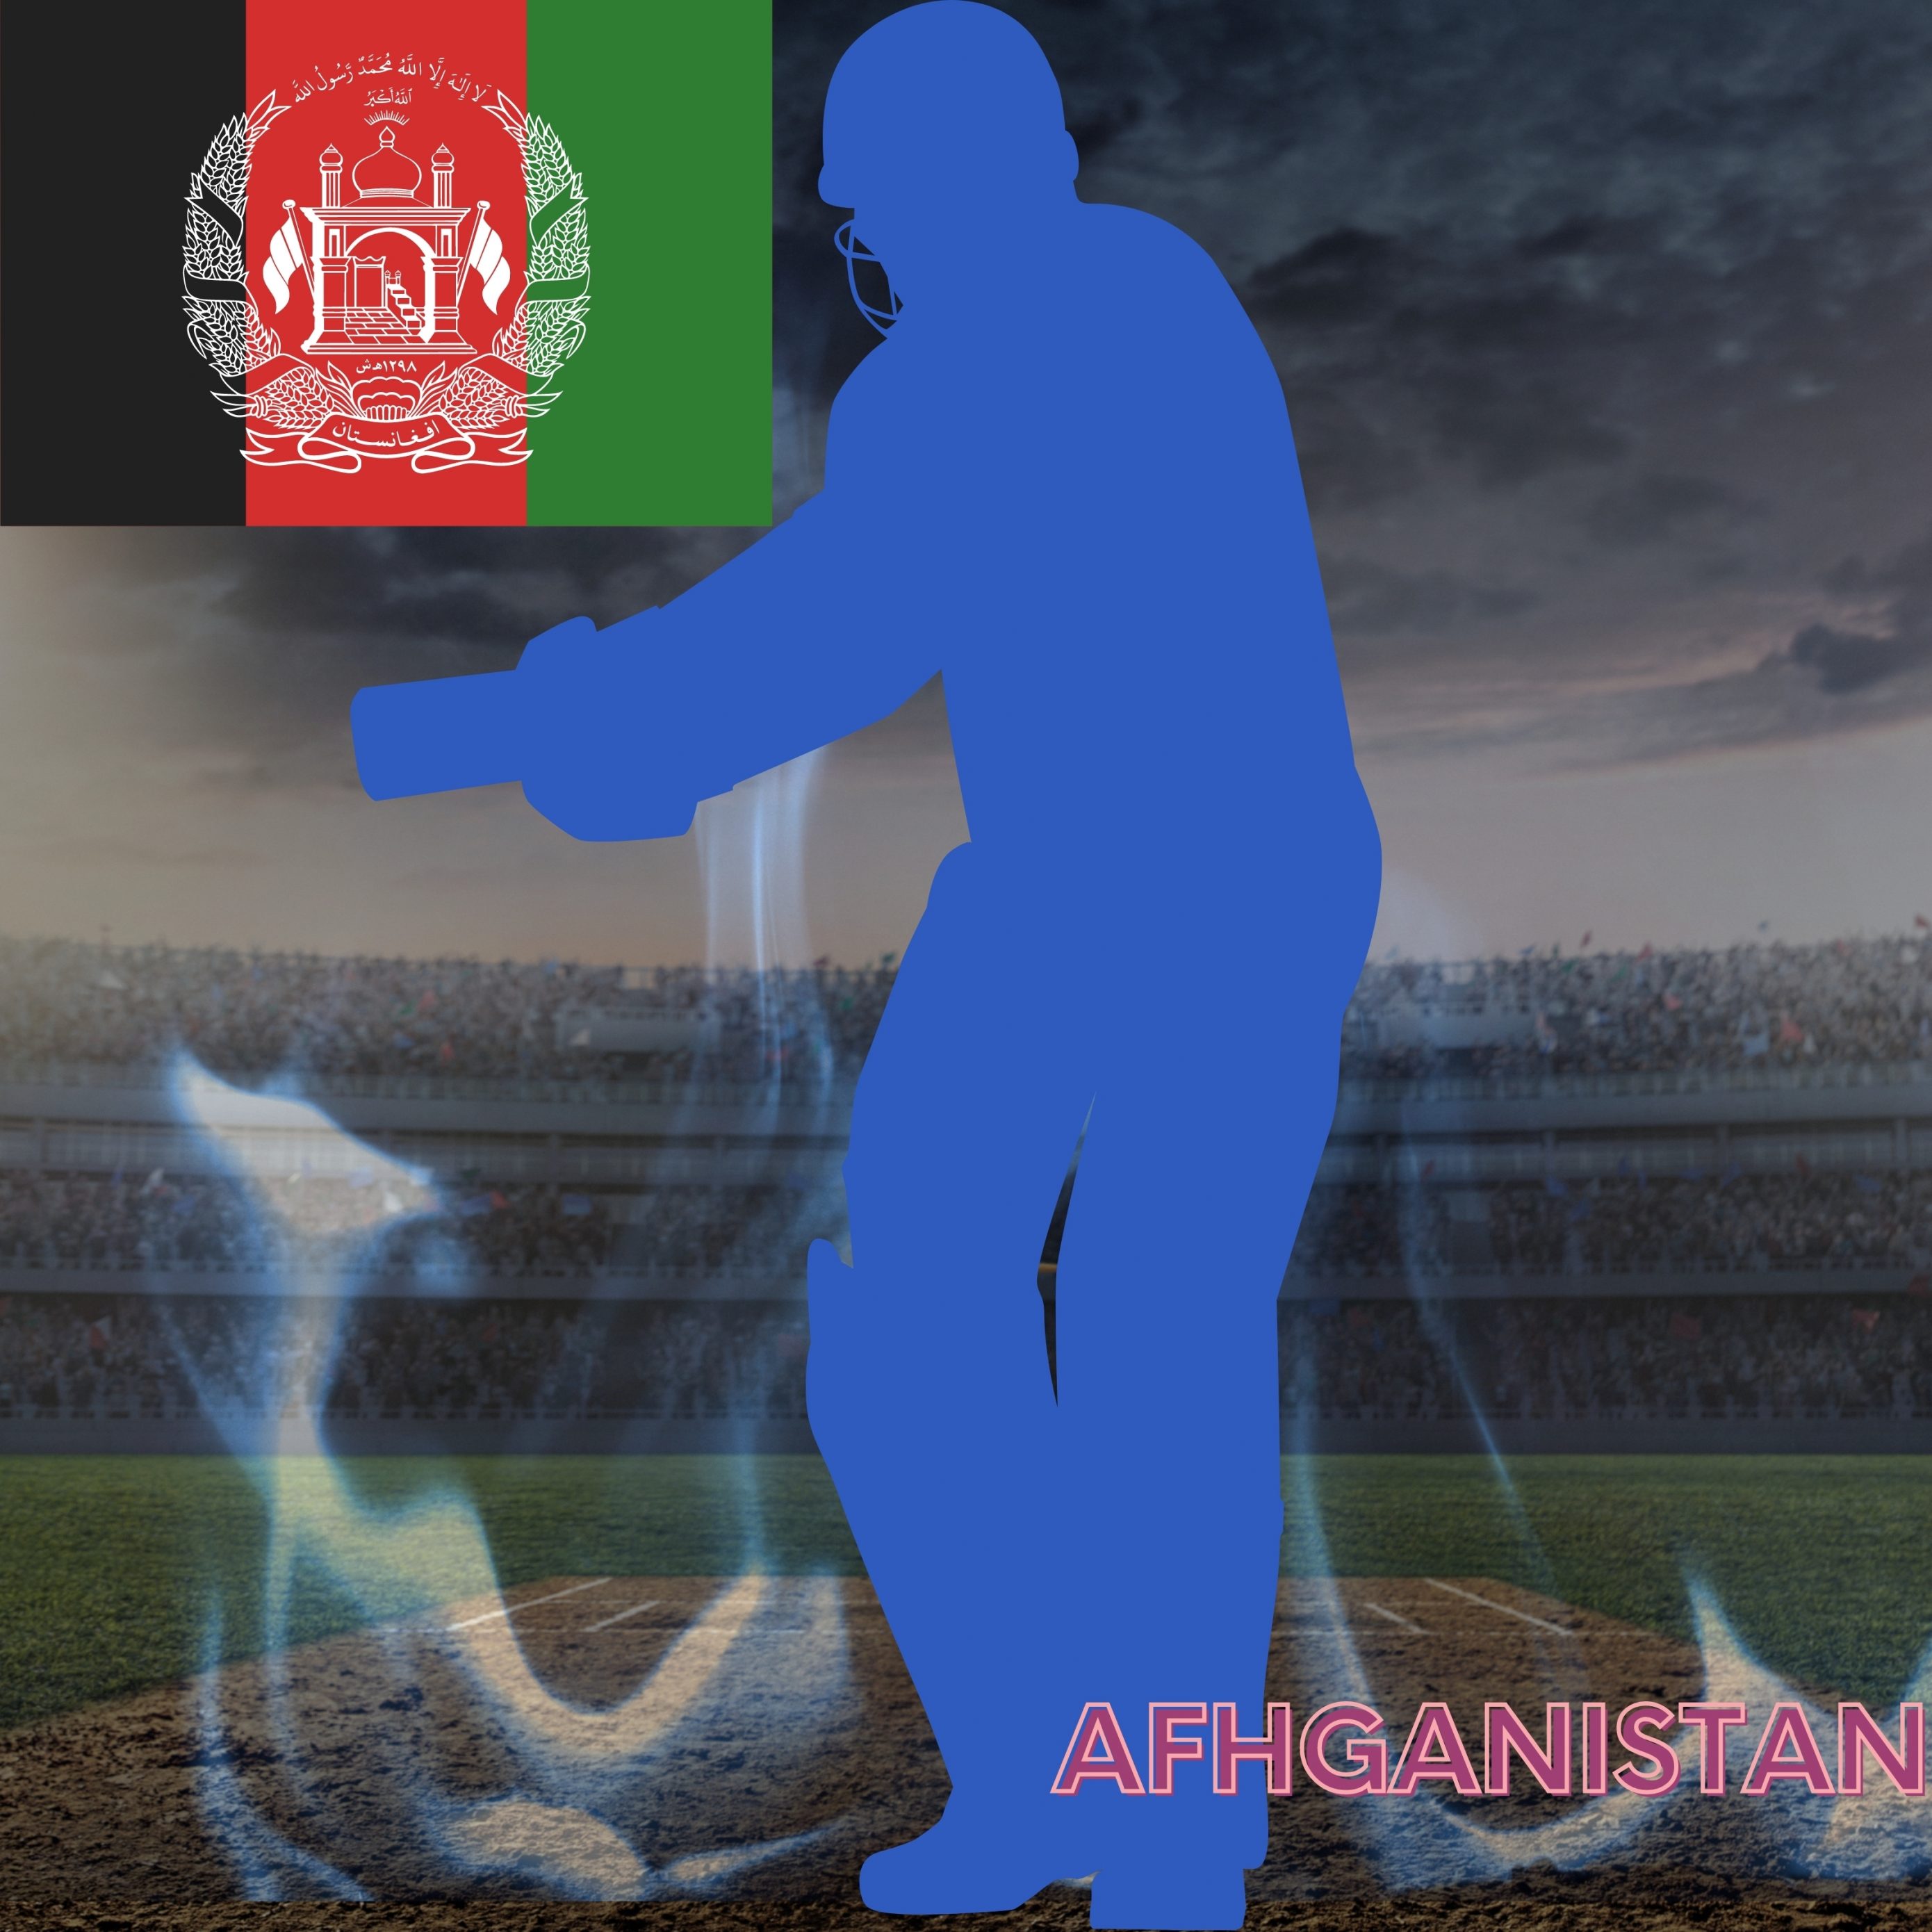 2780x2780 Parallax wallpaper 4k Afhganistan Cricket Stadium iPad Wallpaper 2780x2780 pixels resolution